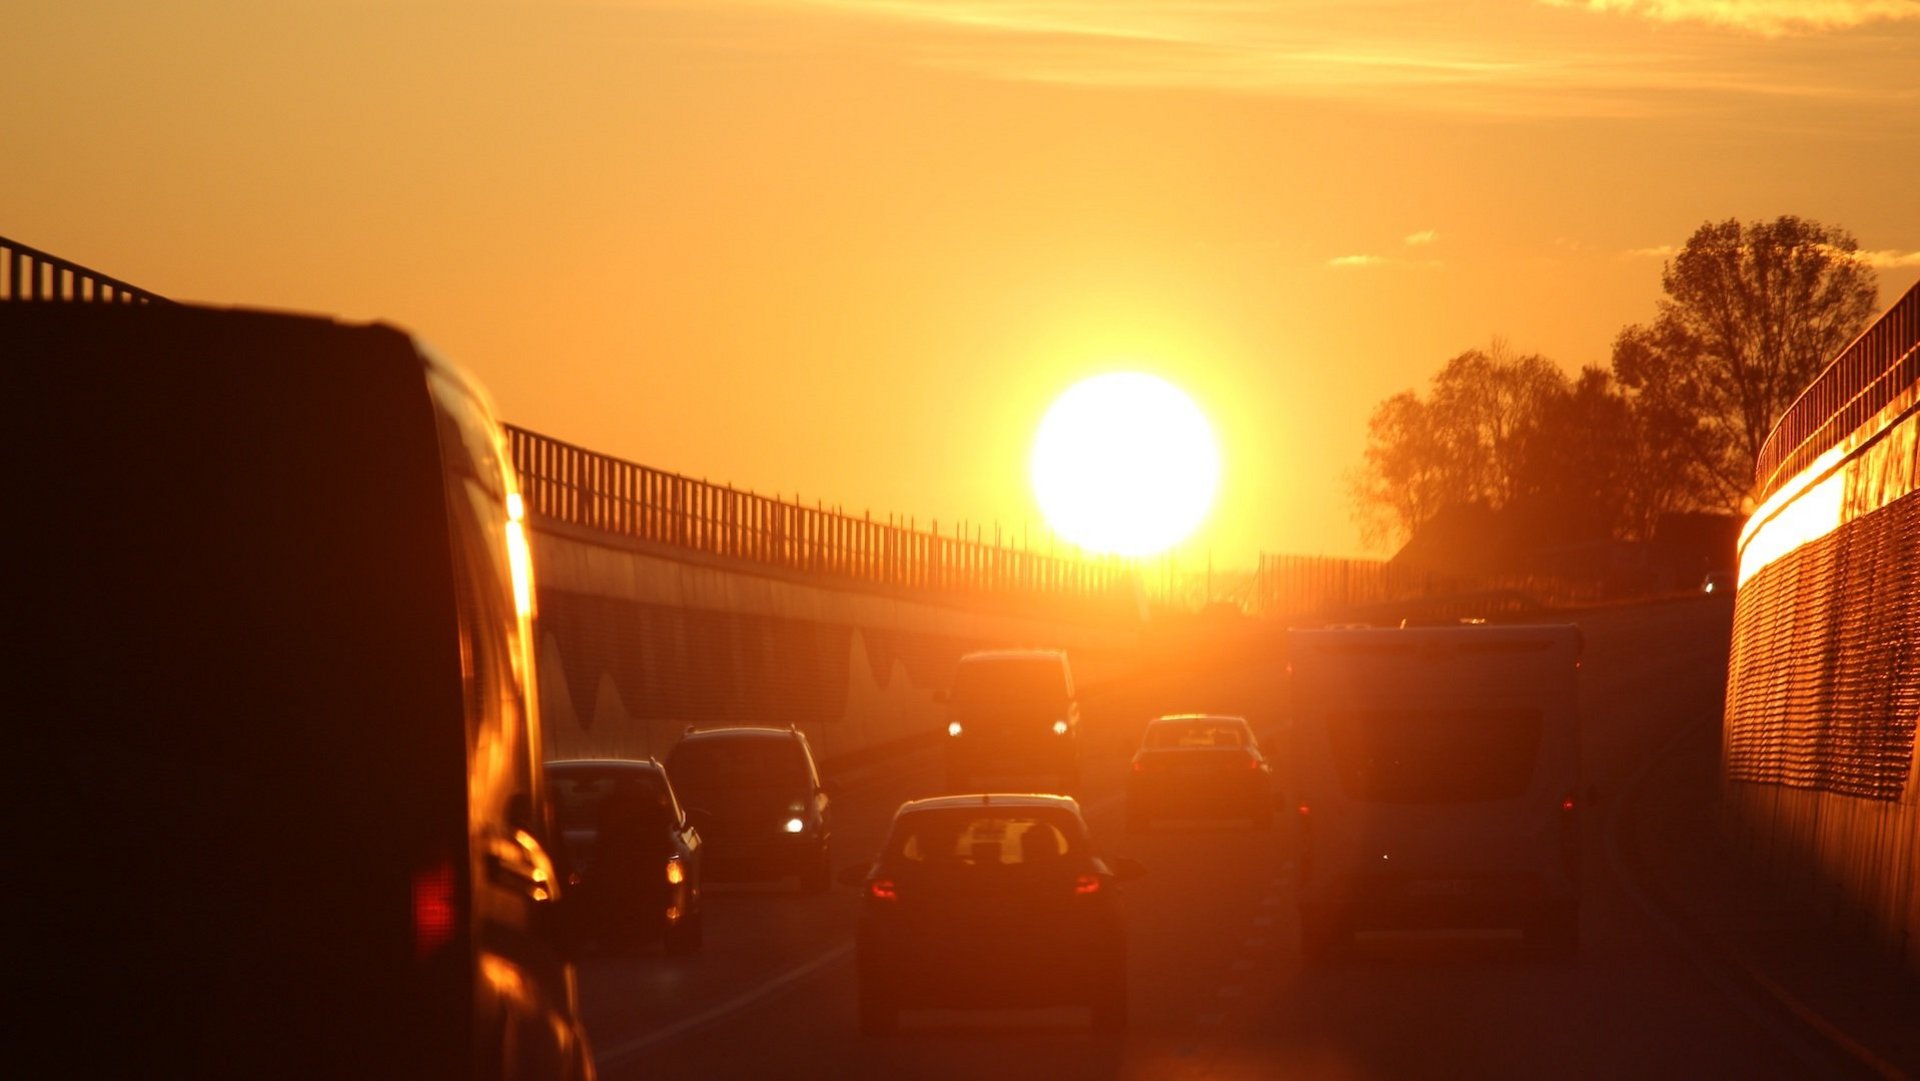 Das Bild zeigt Autos auf einer Autobahn bei sonnigem Herbstwetter.